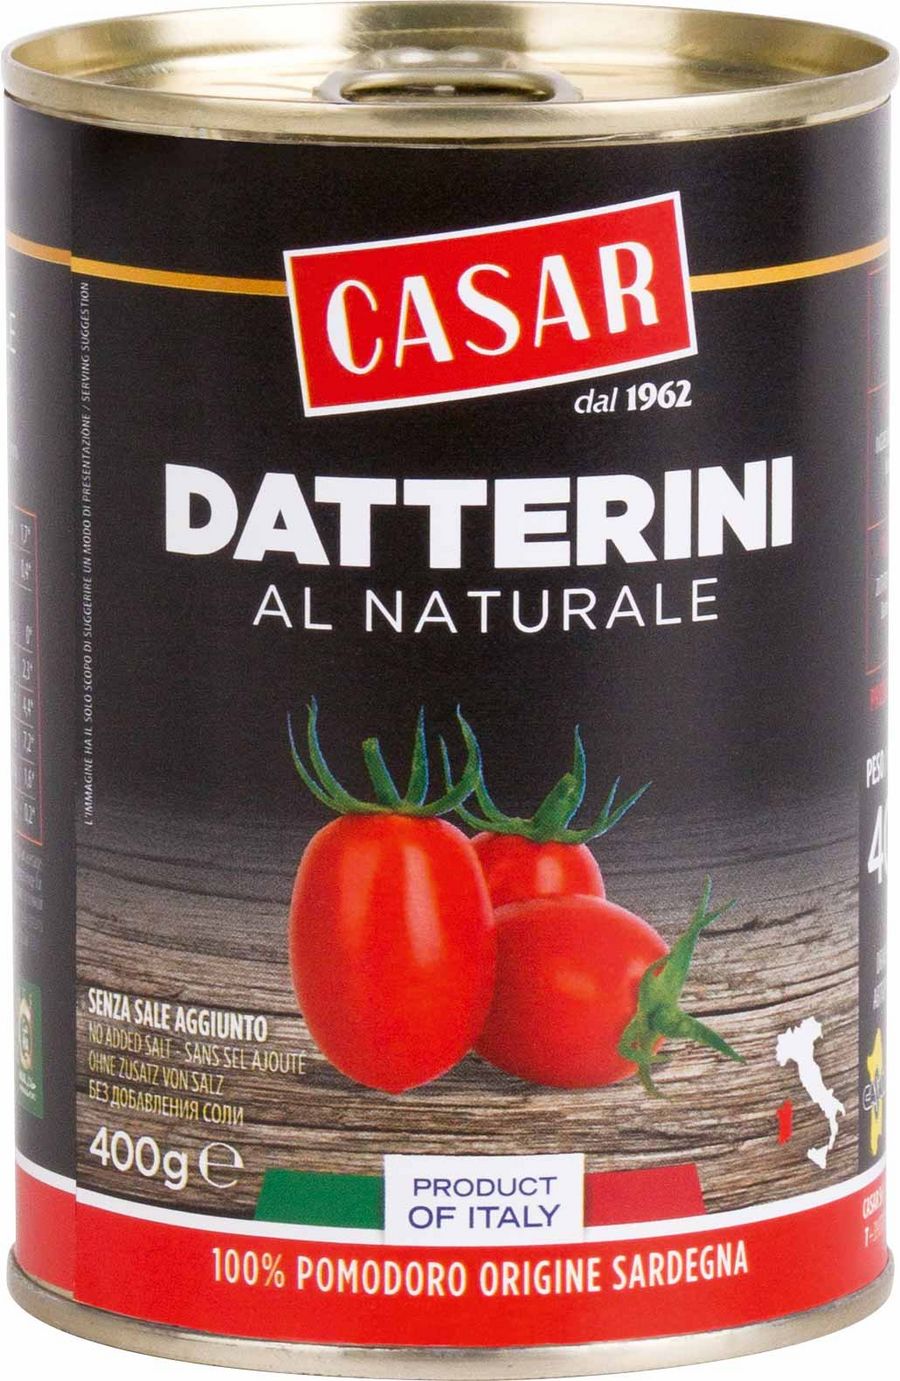 Geschmackvolle Tomaten von Casar verleihen Pizza und Pasta das besondere Etwas.